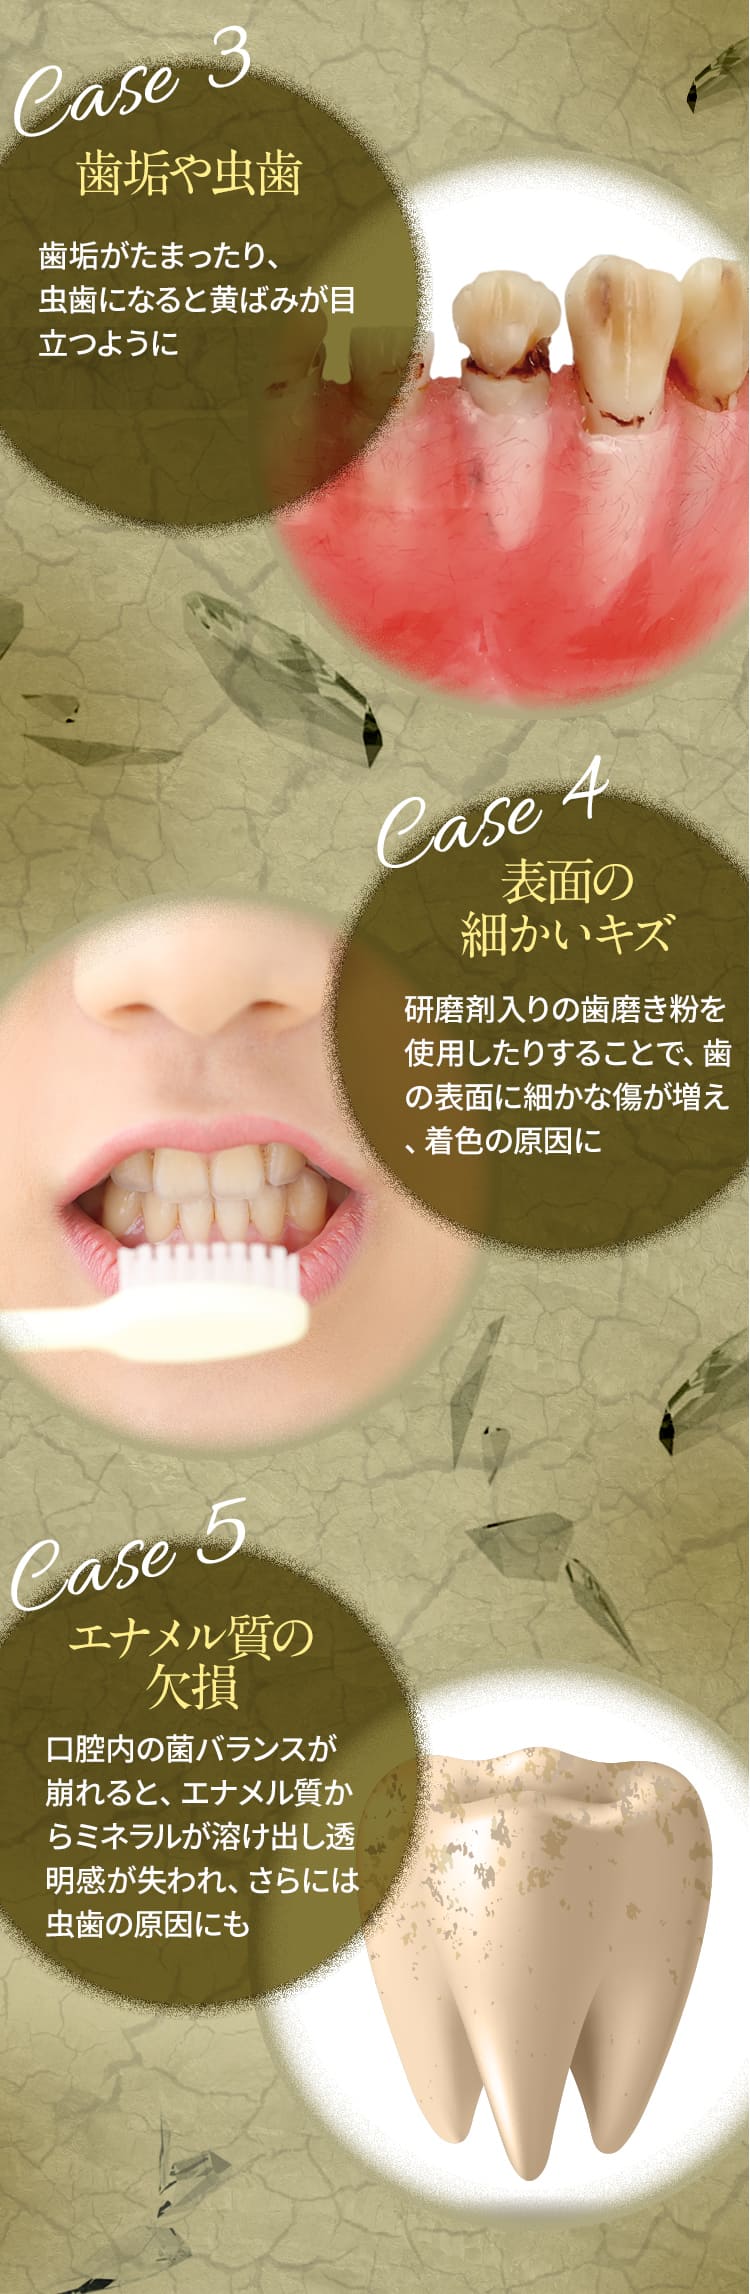 CASE3歯垢や虫歯　CASE4表面の細かいキズ　CASE5エナメル質の欠損